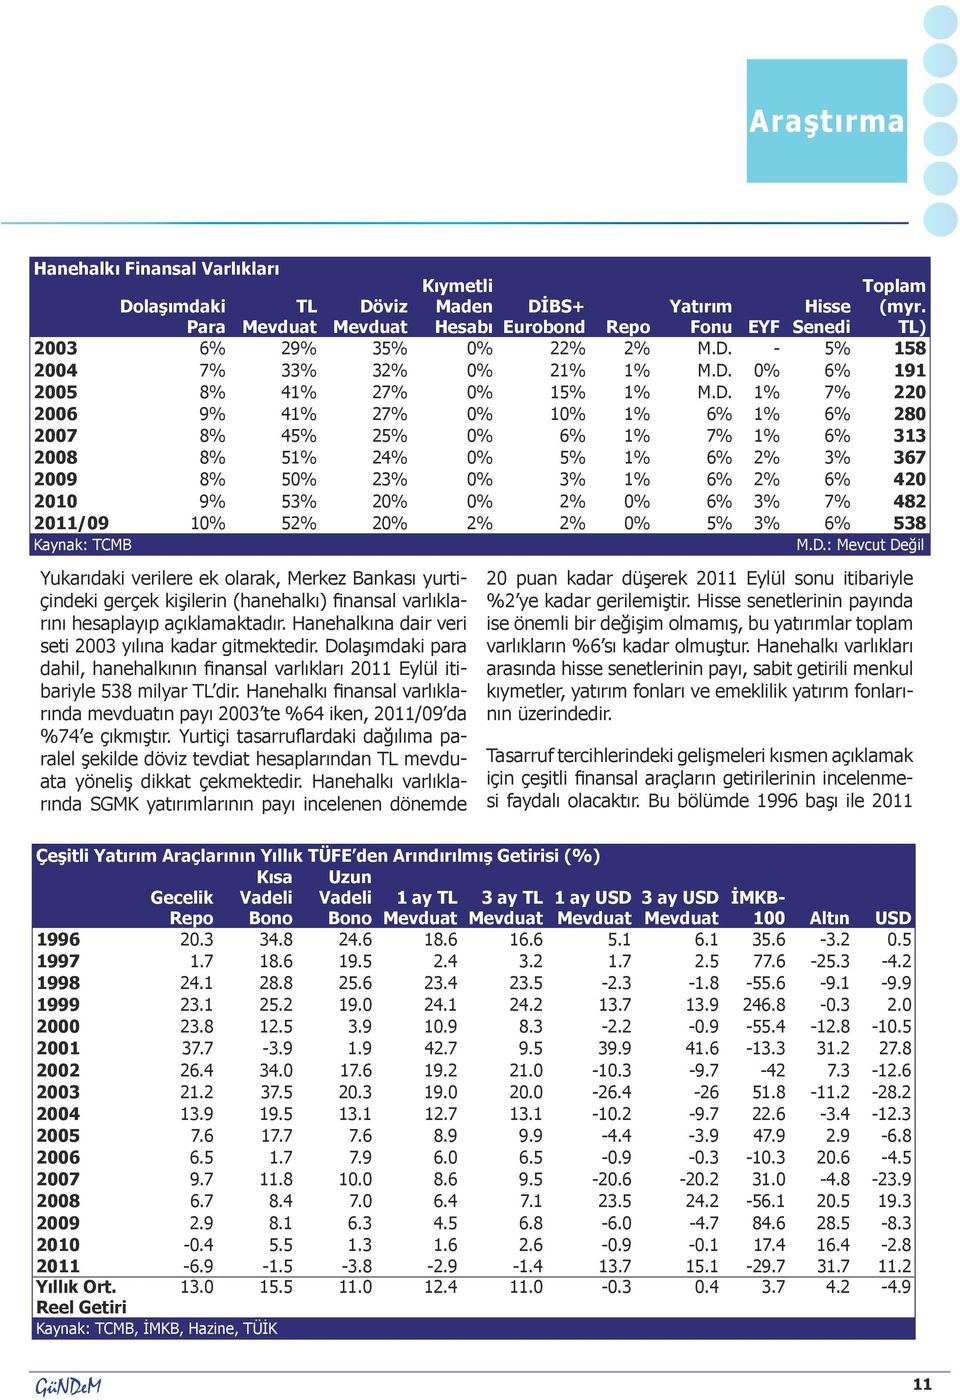 Hanehalkı finansal varlıklarında mevduatın payı 2003 te %64 iken, 2011/09 da %74 e çıkmıştır.